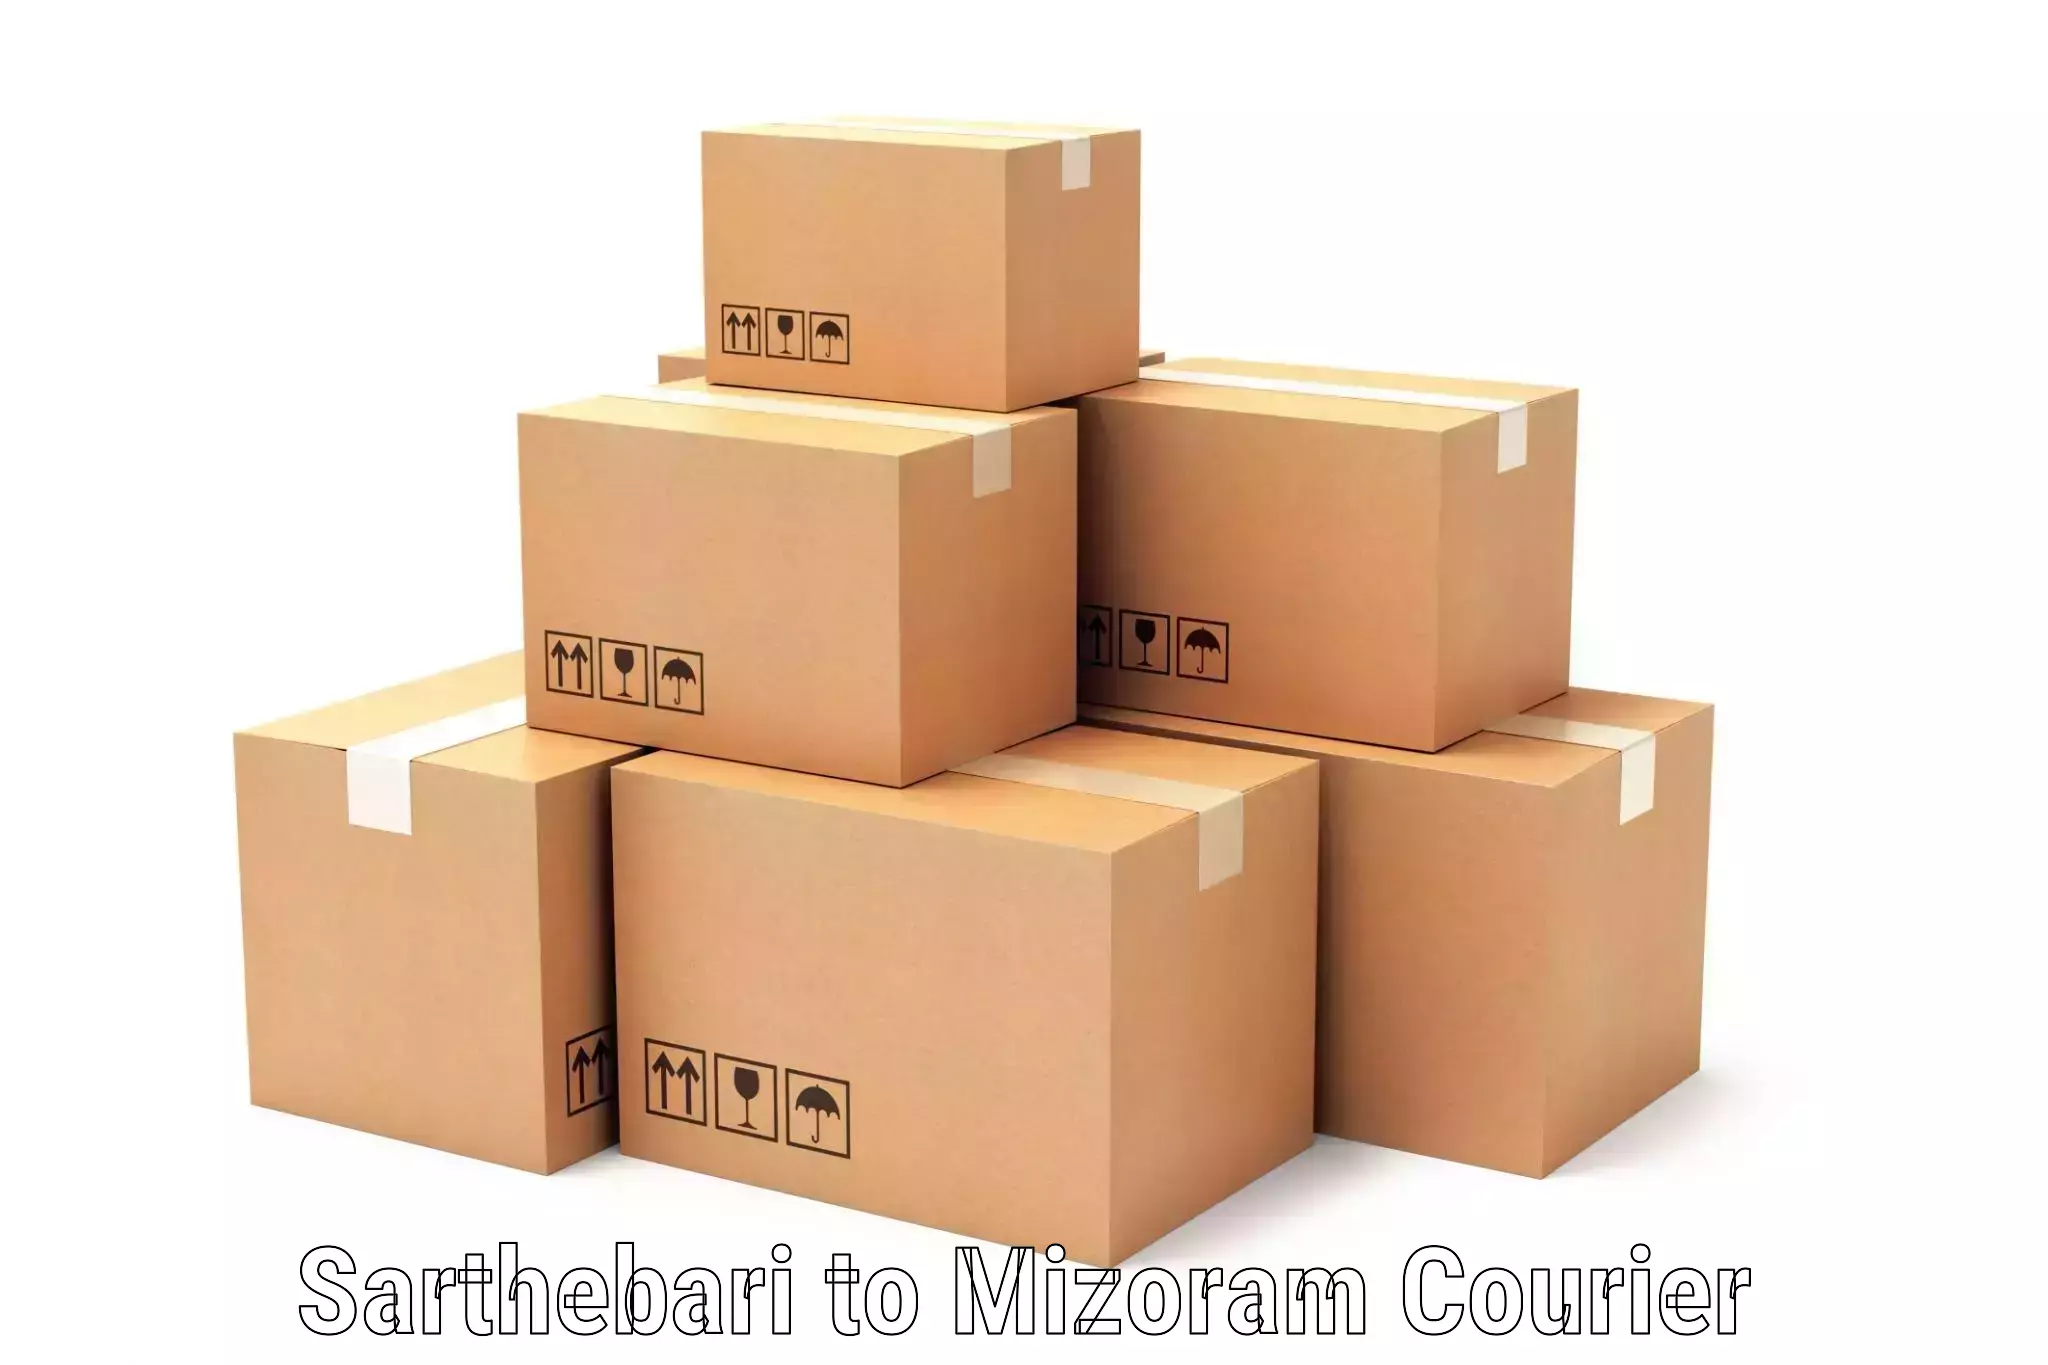 Premium courier services Sarthebari to Mizoram